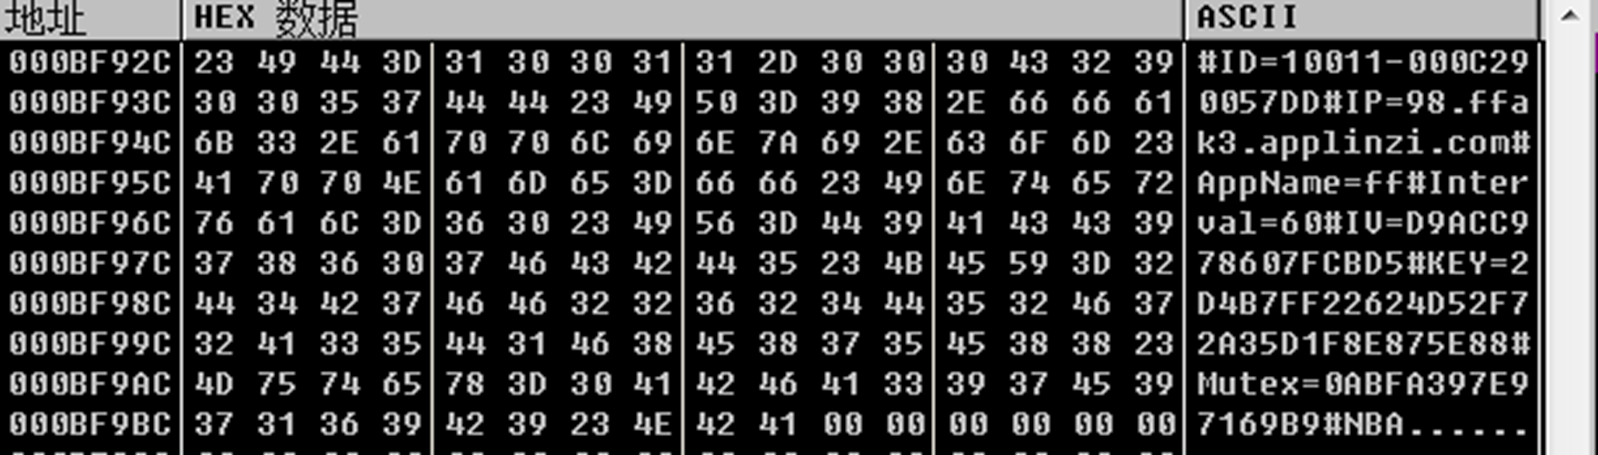 蓝宝菇(APT-C-12)最新攻击样本及C&C机制分析-第28张图片-网盾网络安全培训